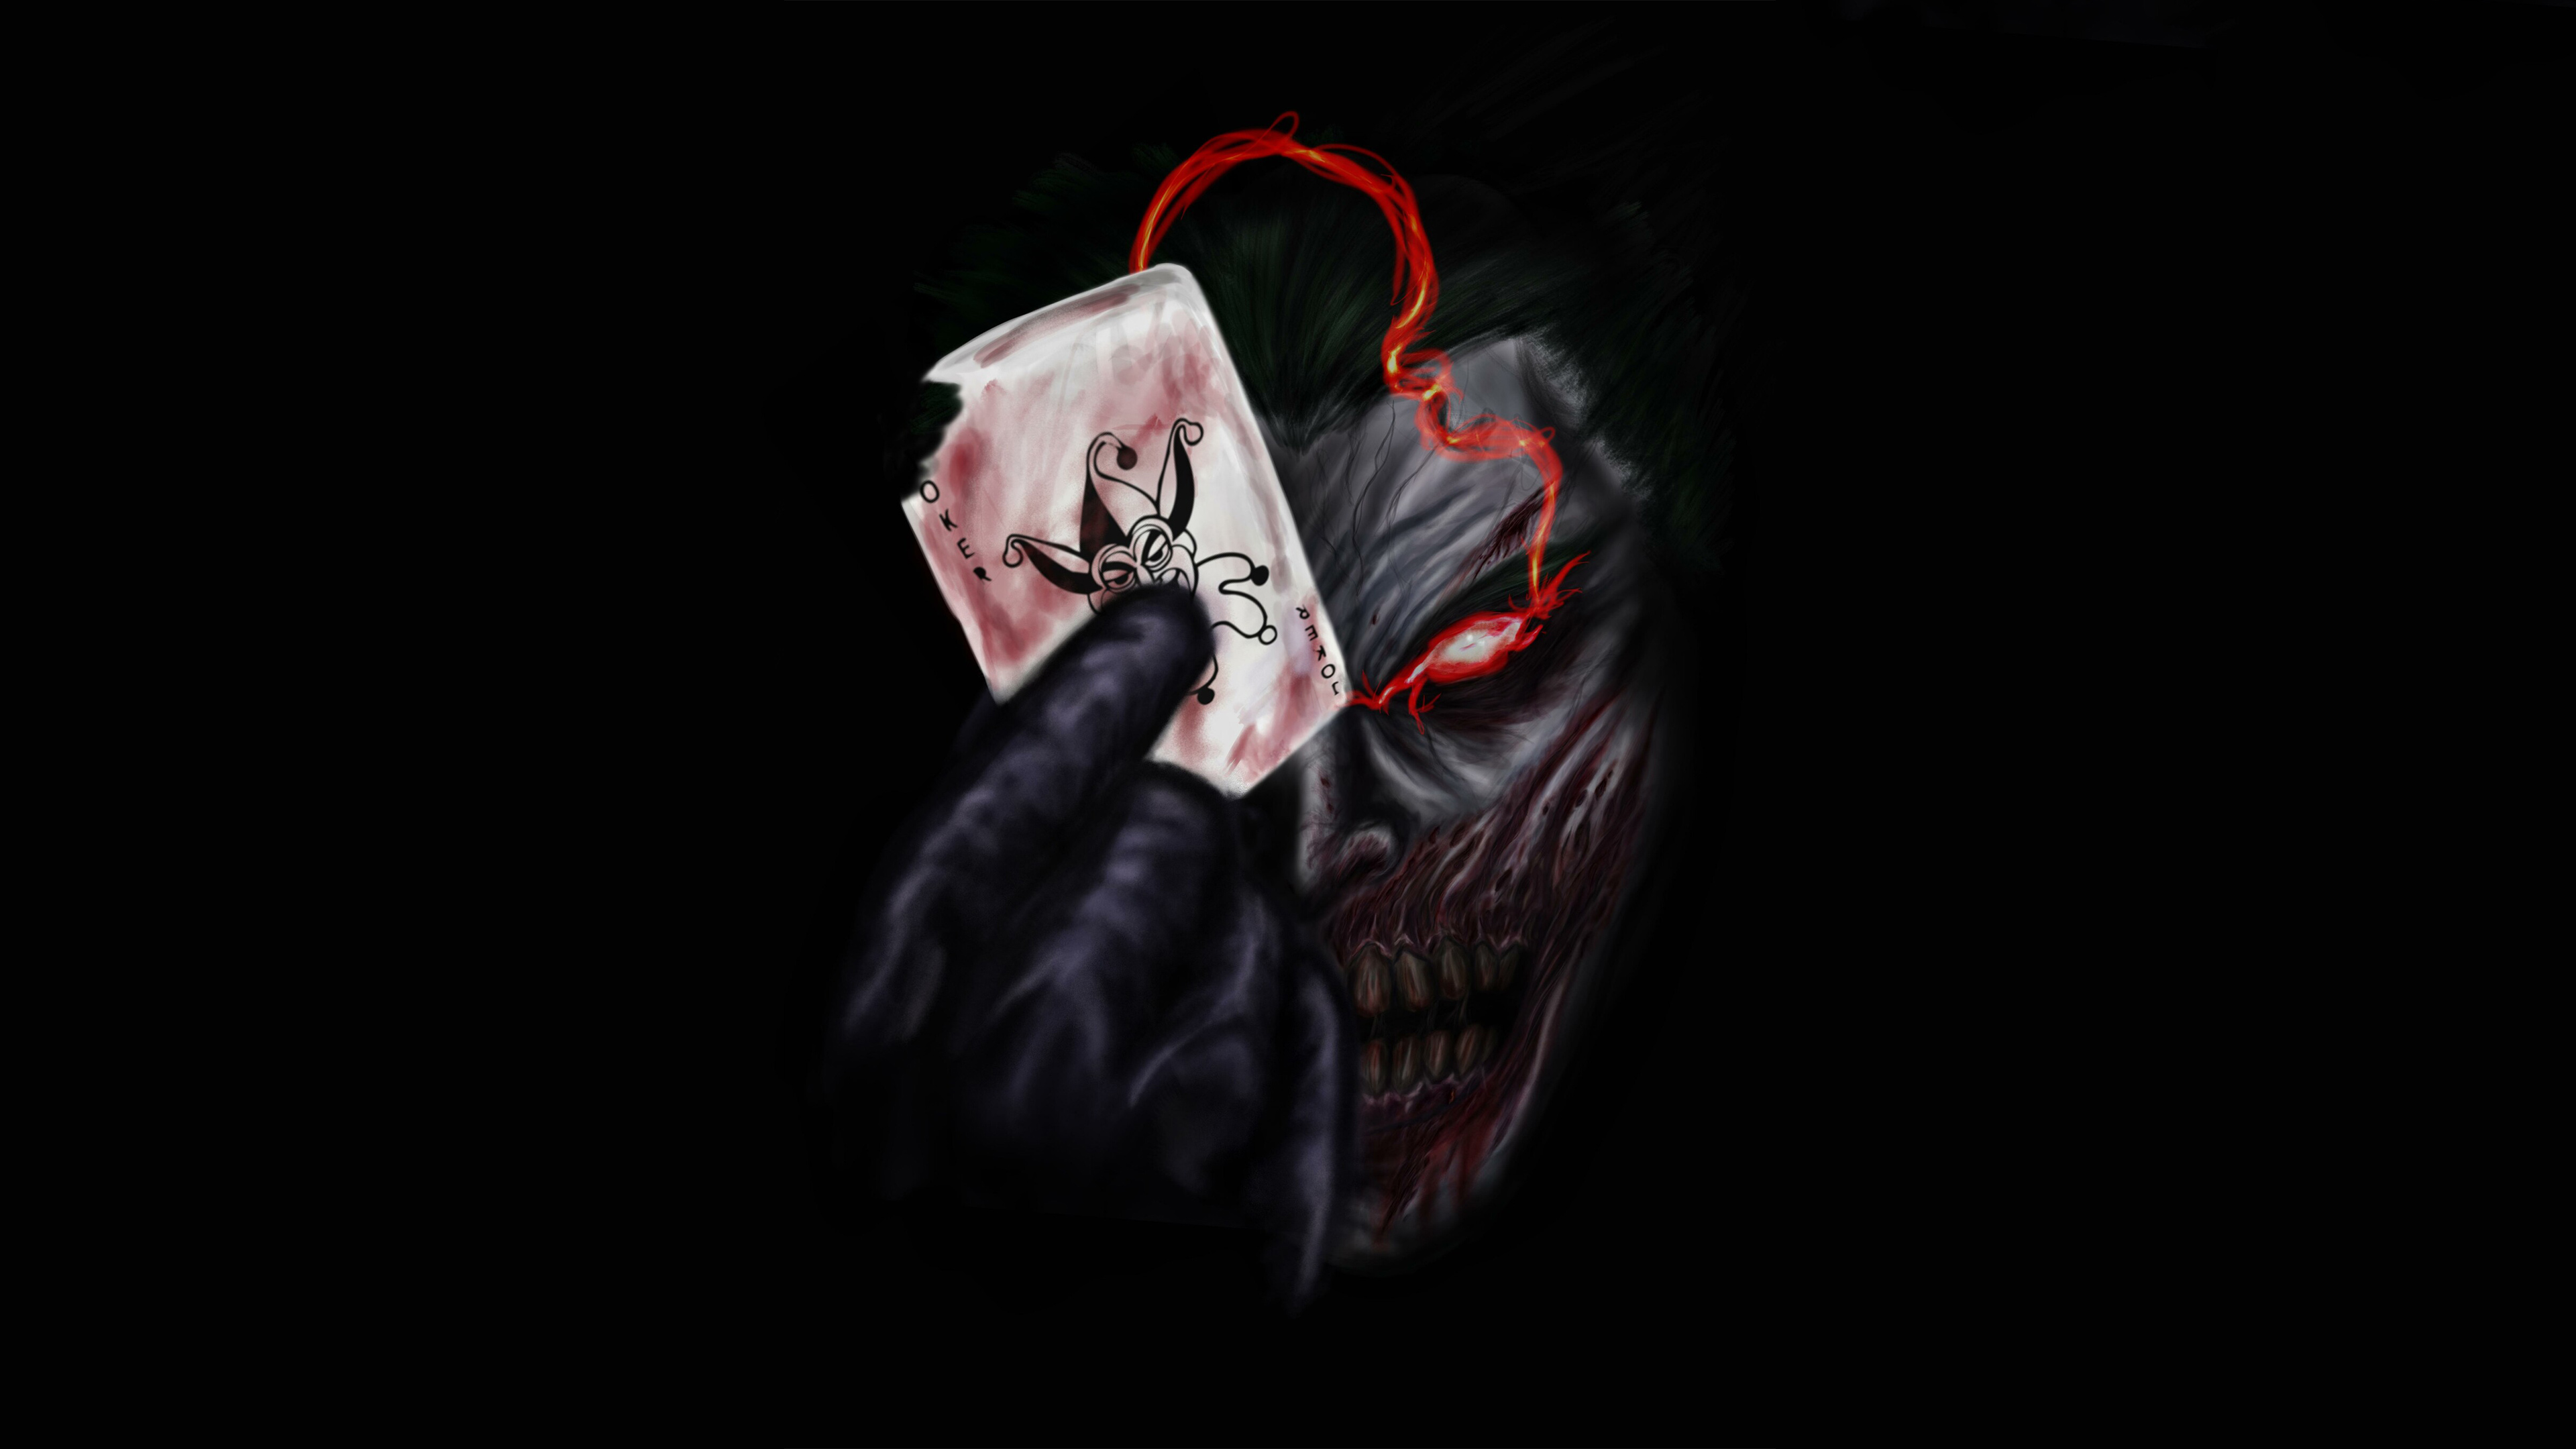 Hd Wallpaper 4k Of Joker Joker Cyberpunk 4k, Hd Superheroes, 4k ...